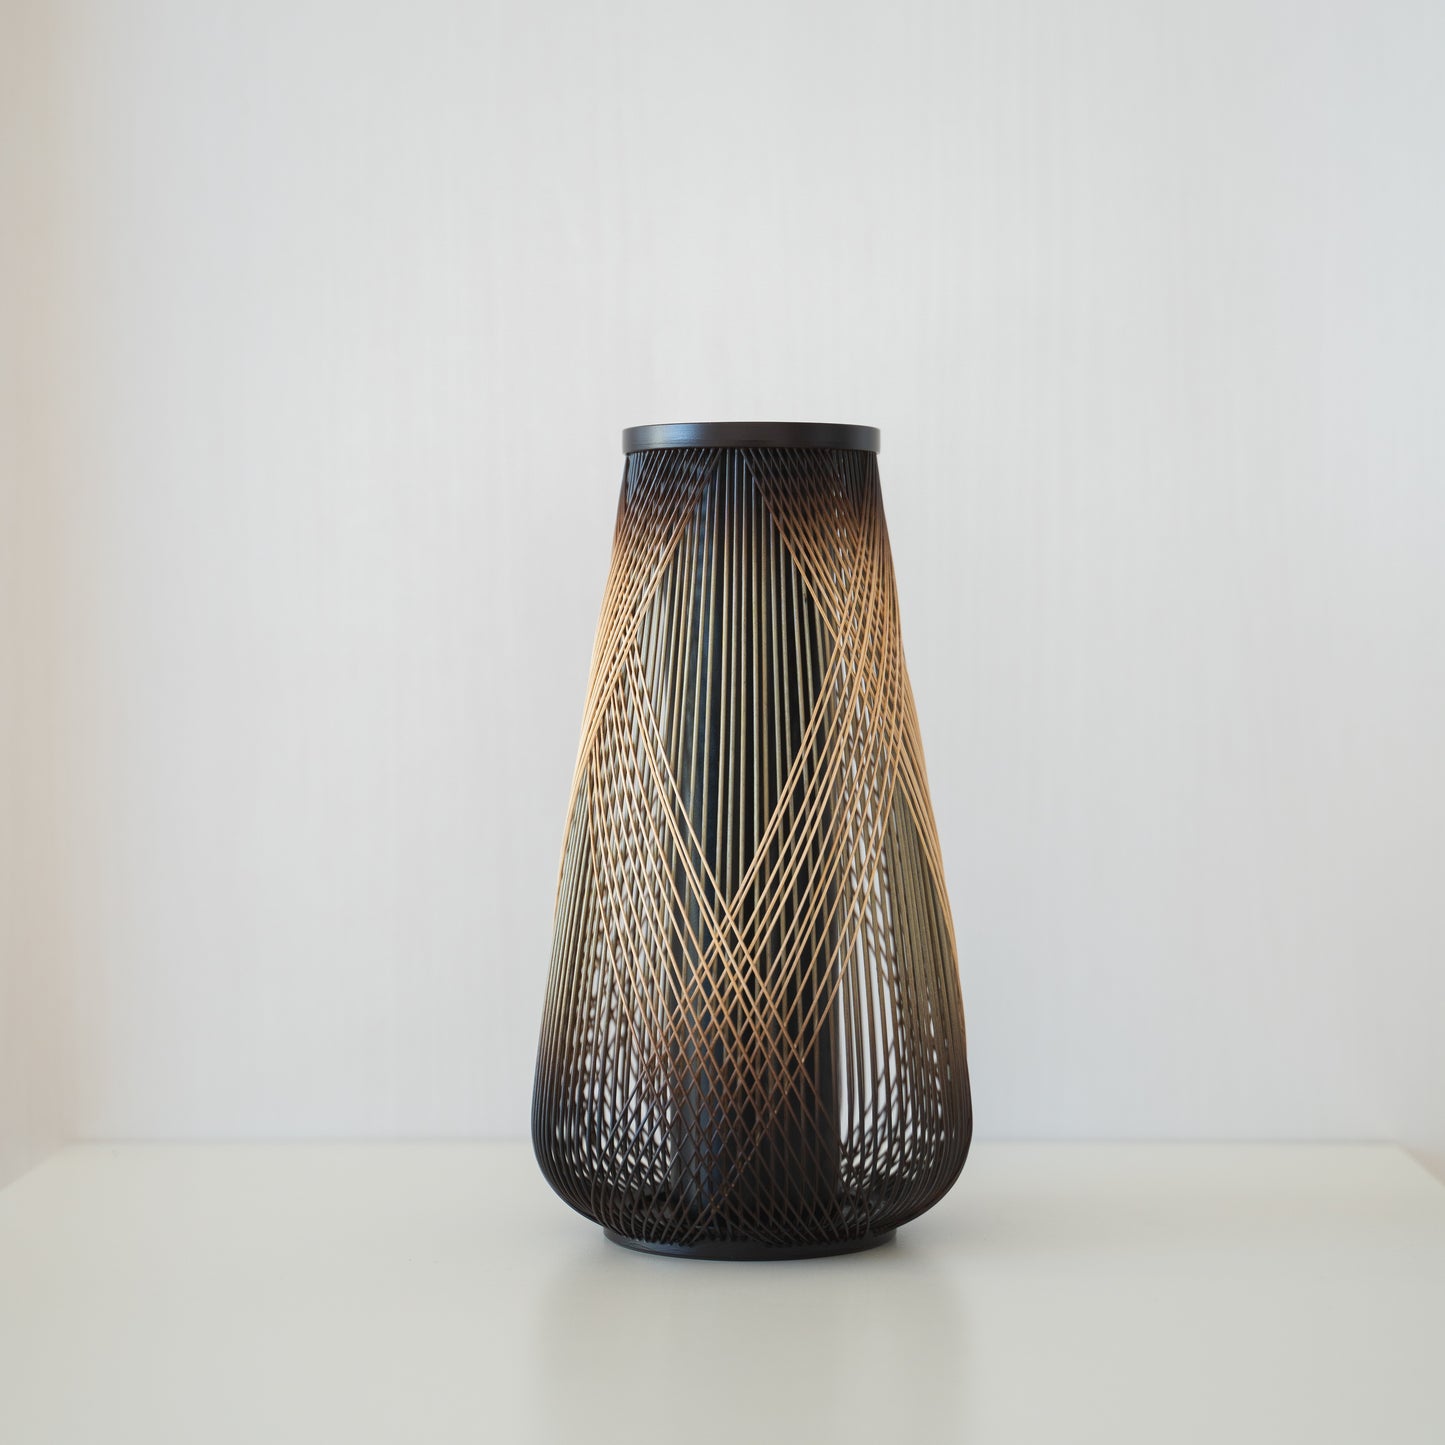 Japanese Bamboo Flower Vase “Rising Dragon”